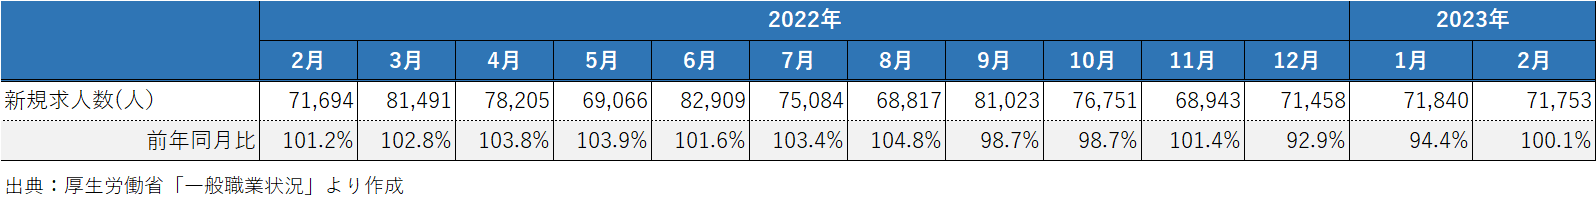 202304_2_建設業の新規求人数の推移